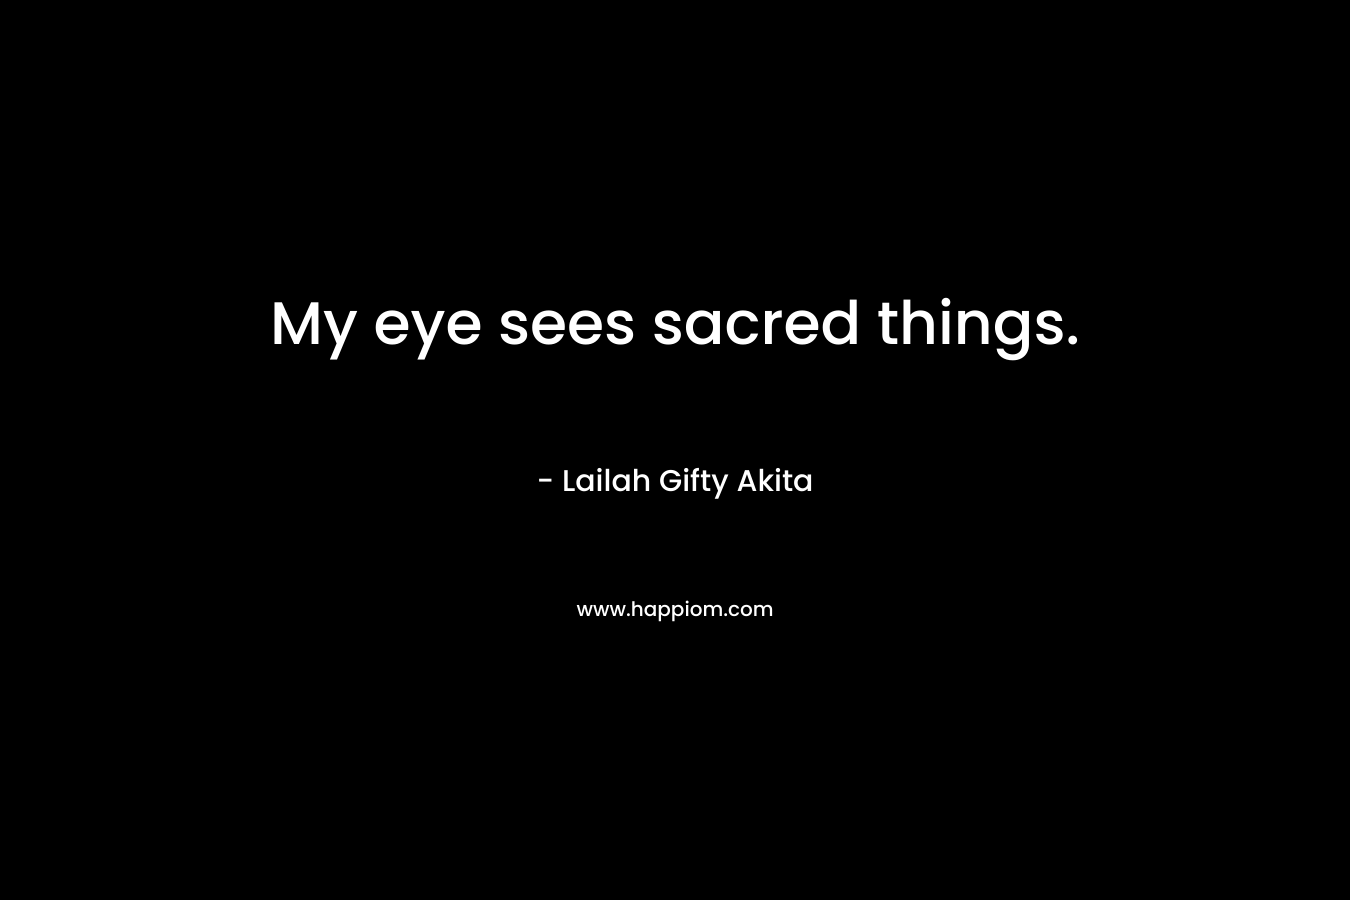 My eye sees sacred things.